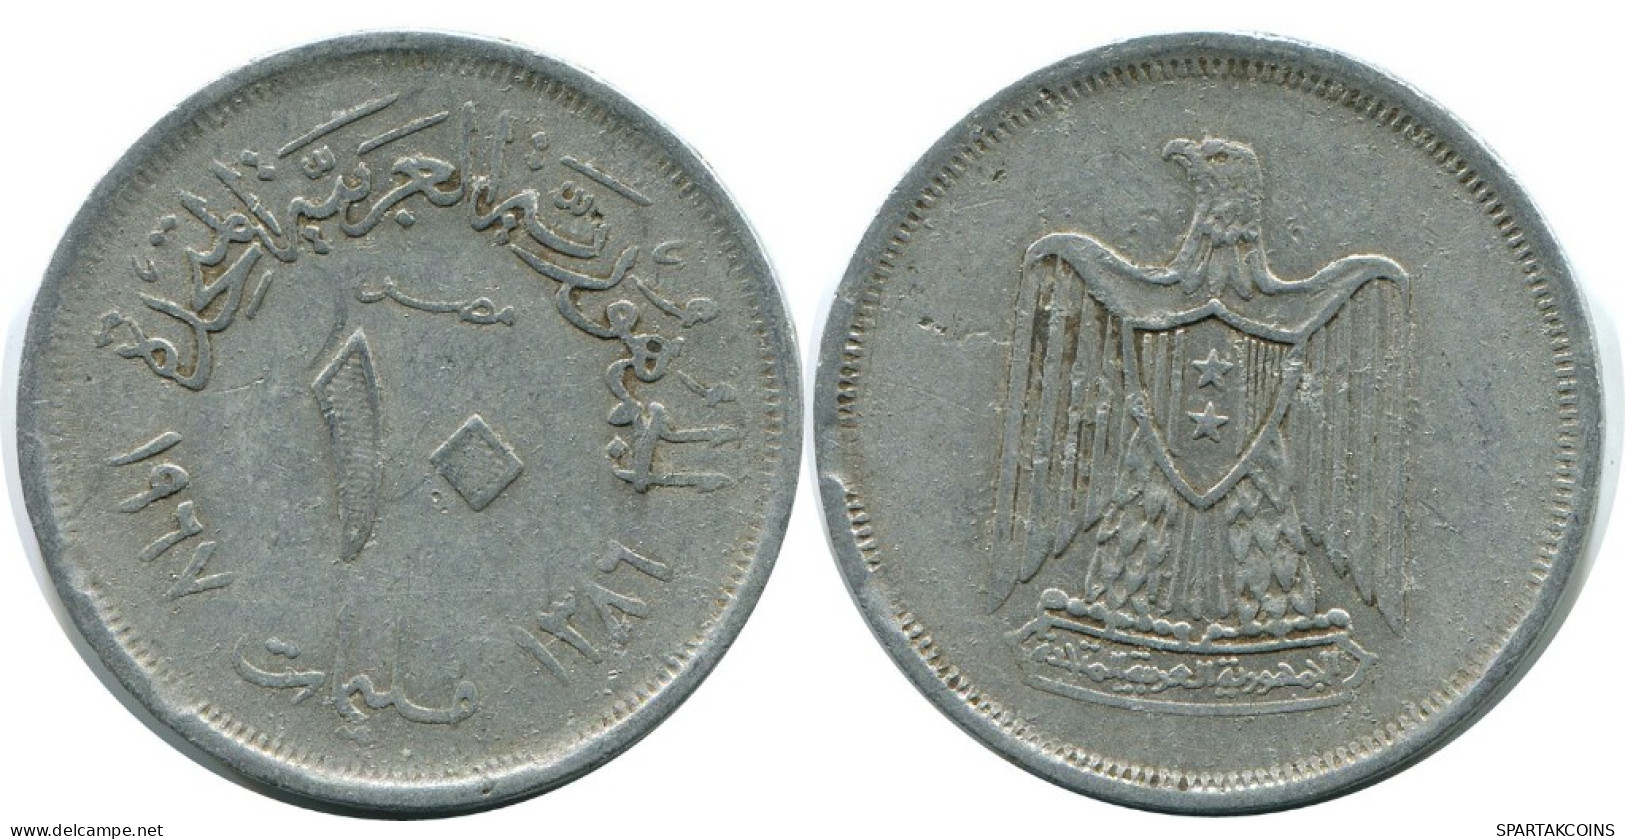 10 MILLIEMES 1967 ÄGYPTEN EGYPT Islamisch Münze #AH663.3.D.A - Egypt